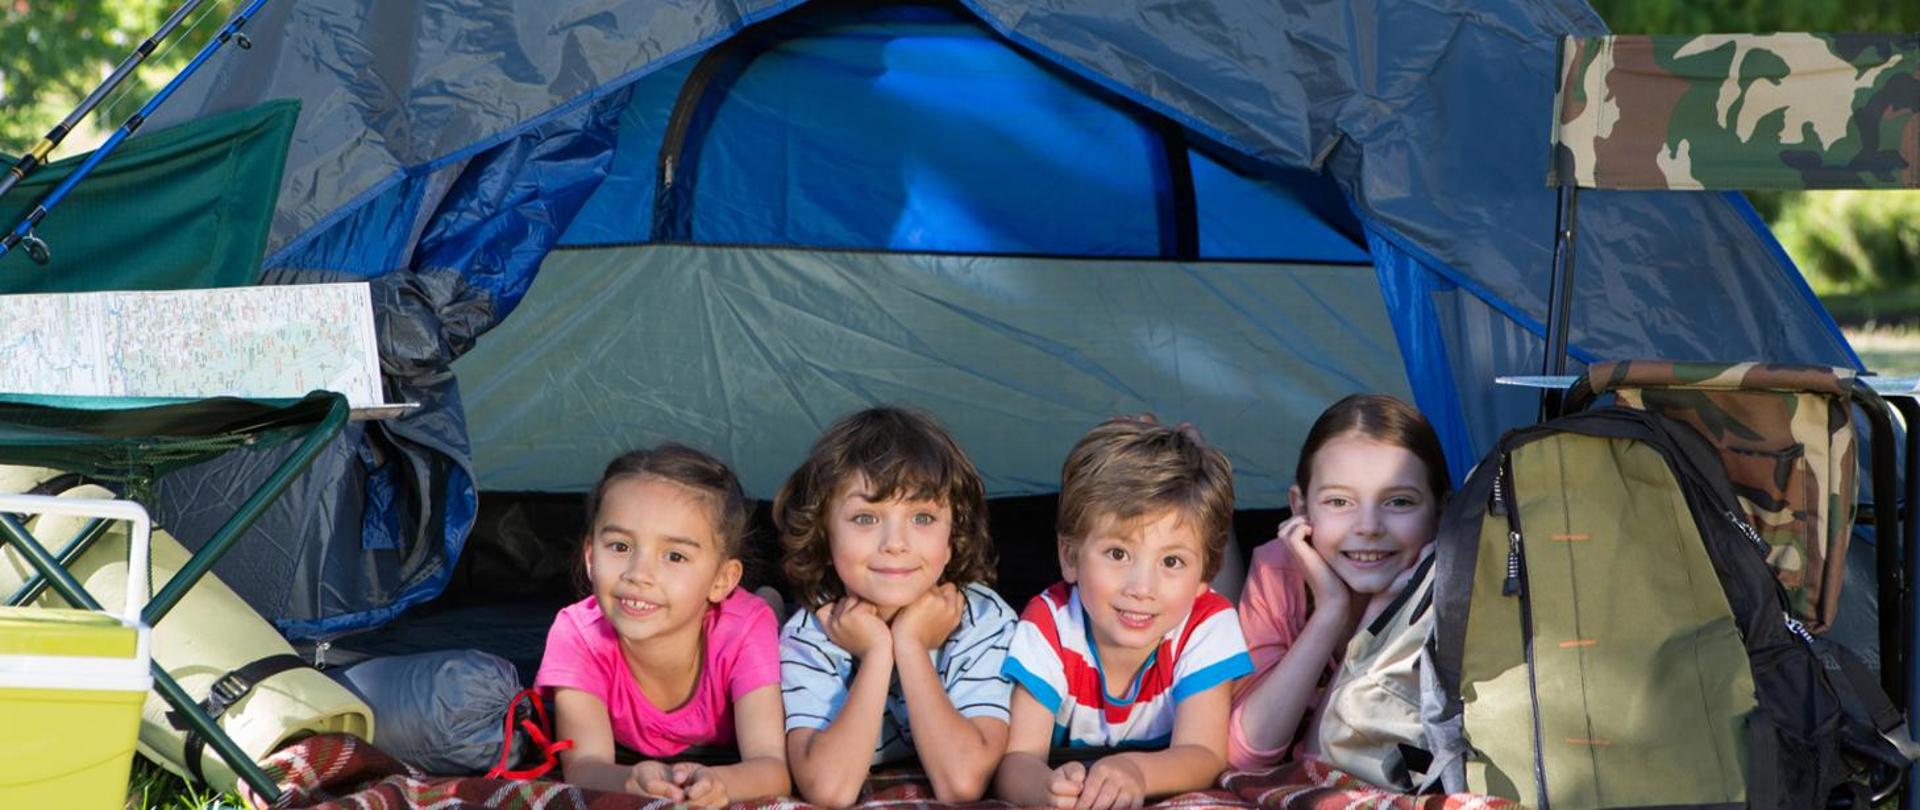 Zdjęcie przedstawia uśmiechnięte dzieci leżące pod niebieskim namiotem. Koło namiotu z prawej strony znajduje się zielony plecak, po lewej stolik z mapą i lodówka turystyczna.